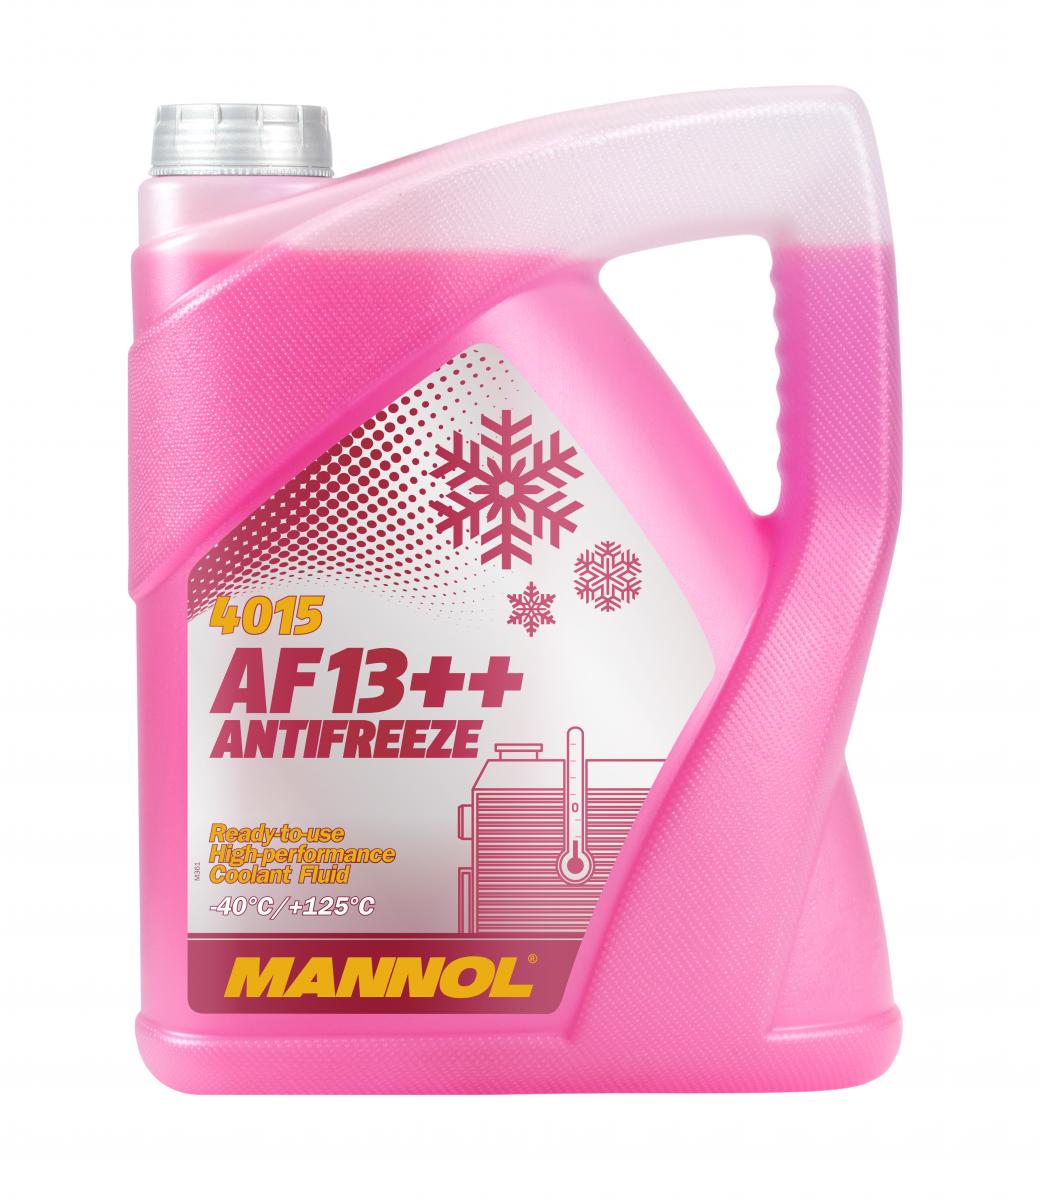 5 Liter MANNOL Antifreeze AF13++ (-40 °C) 4015